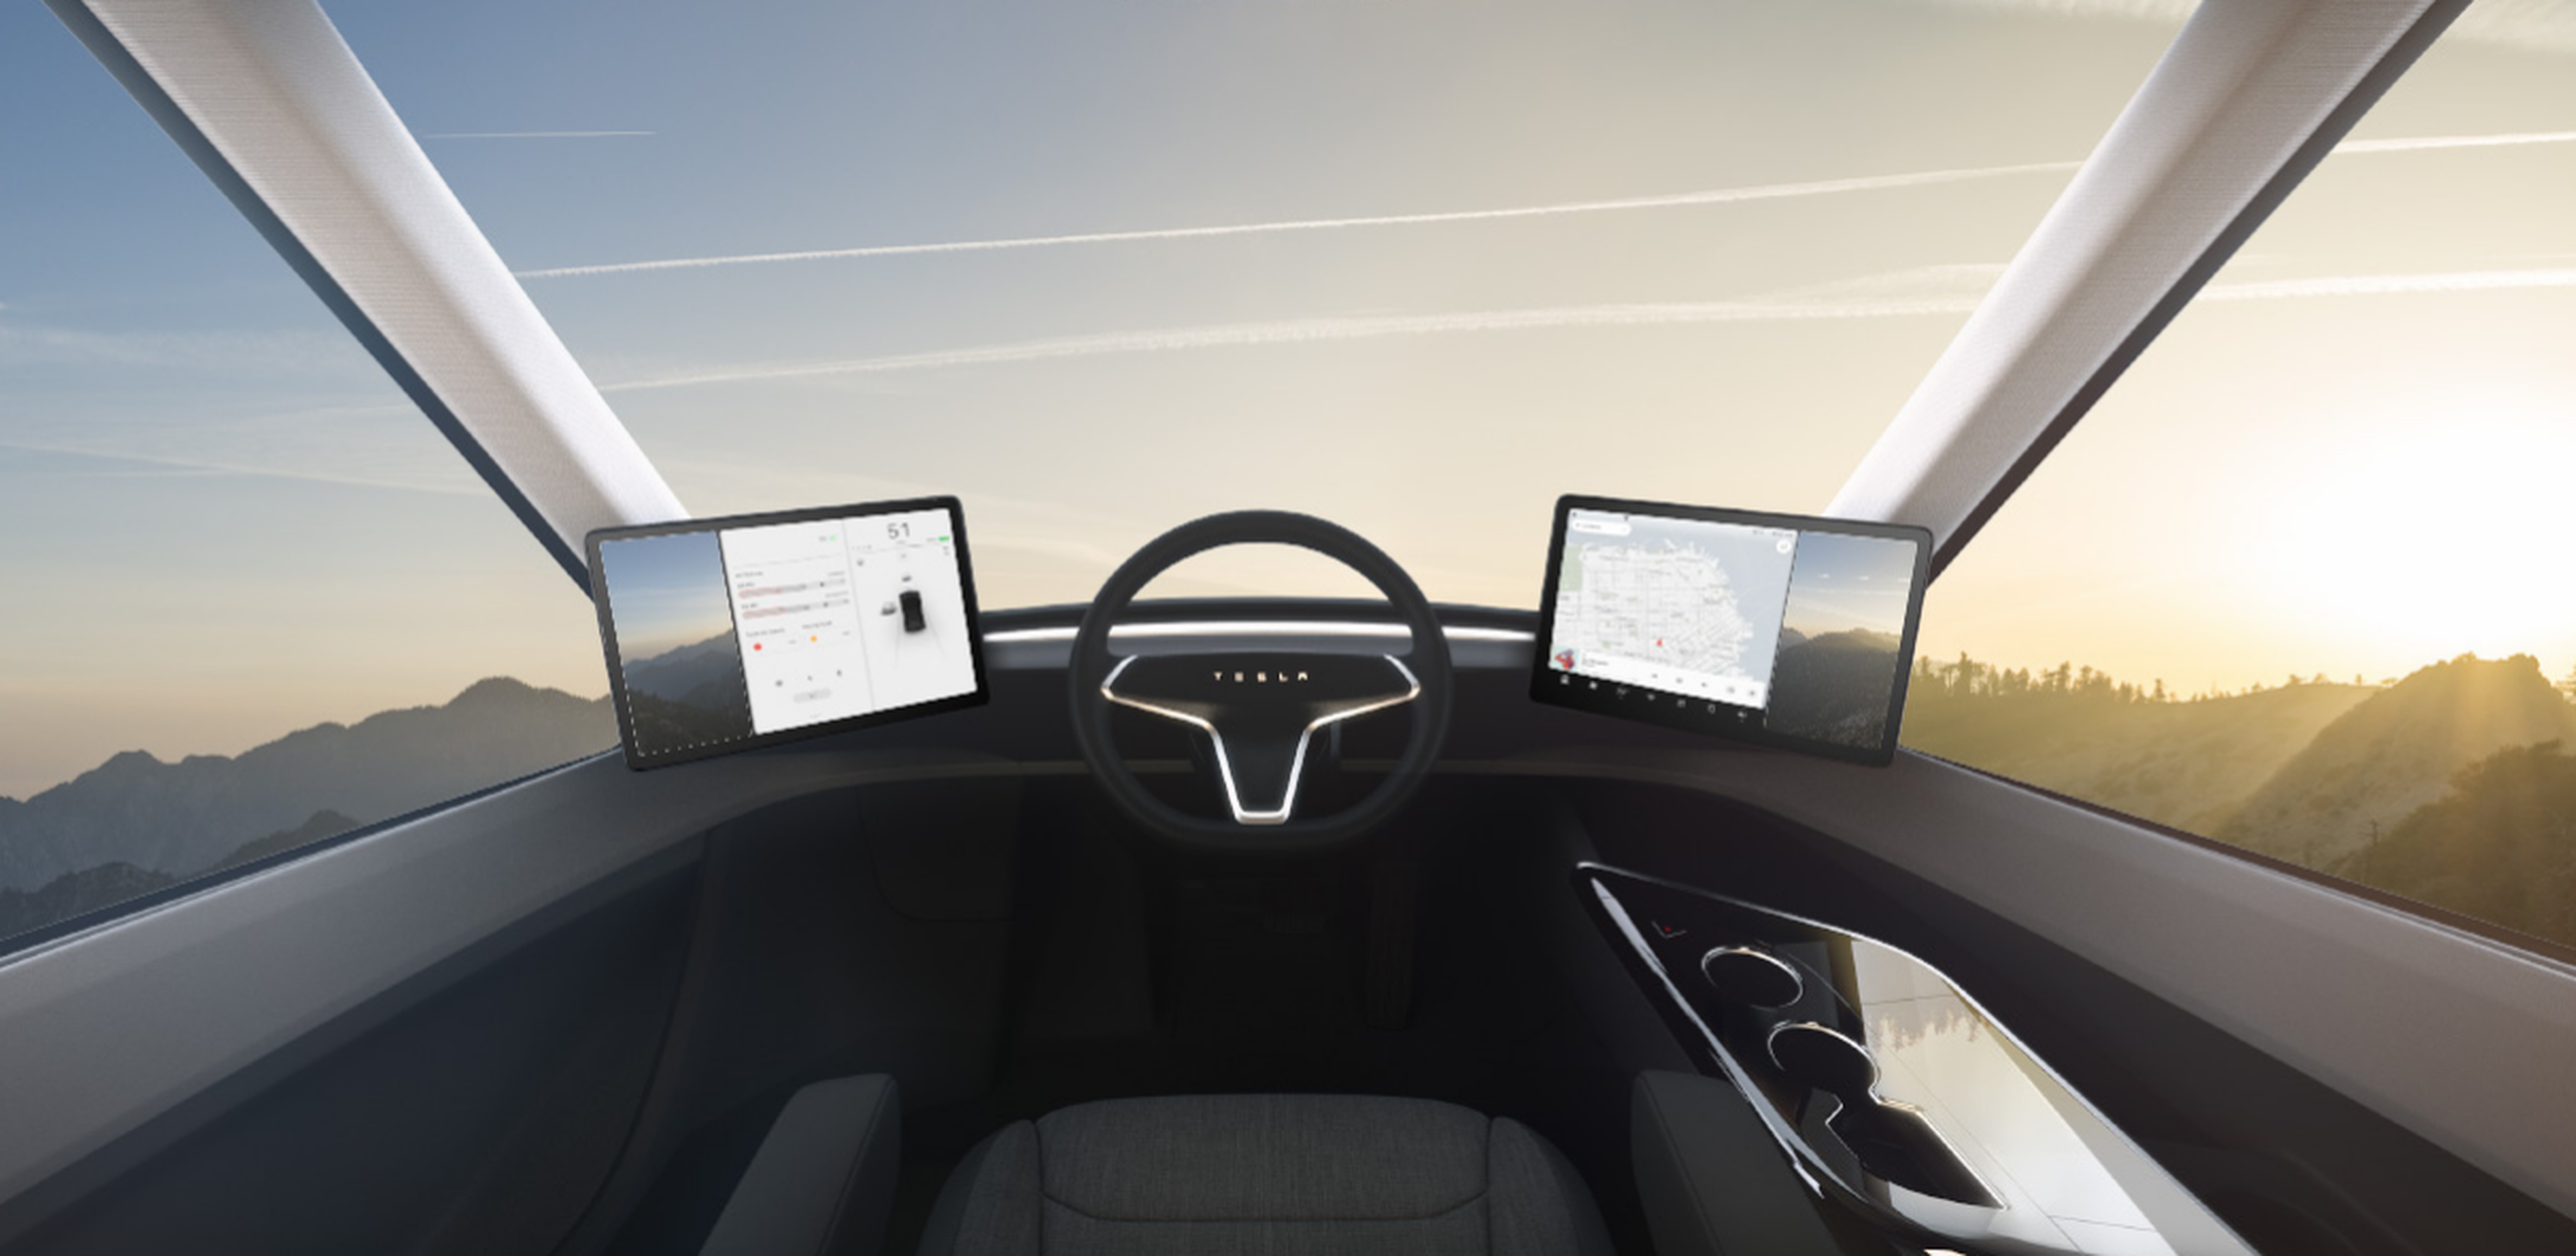 Imágenes del Tesla Semi